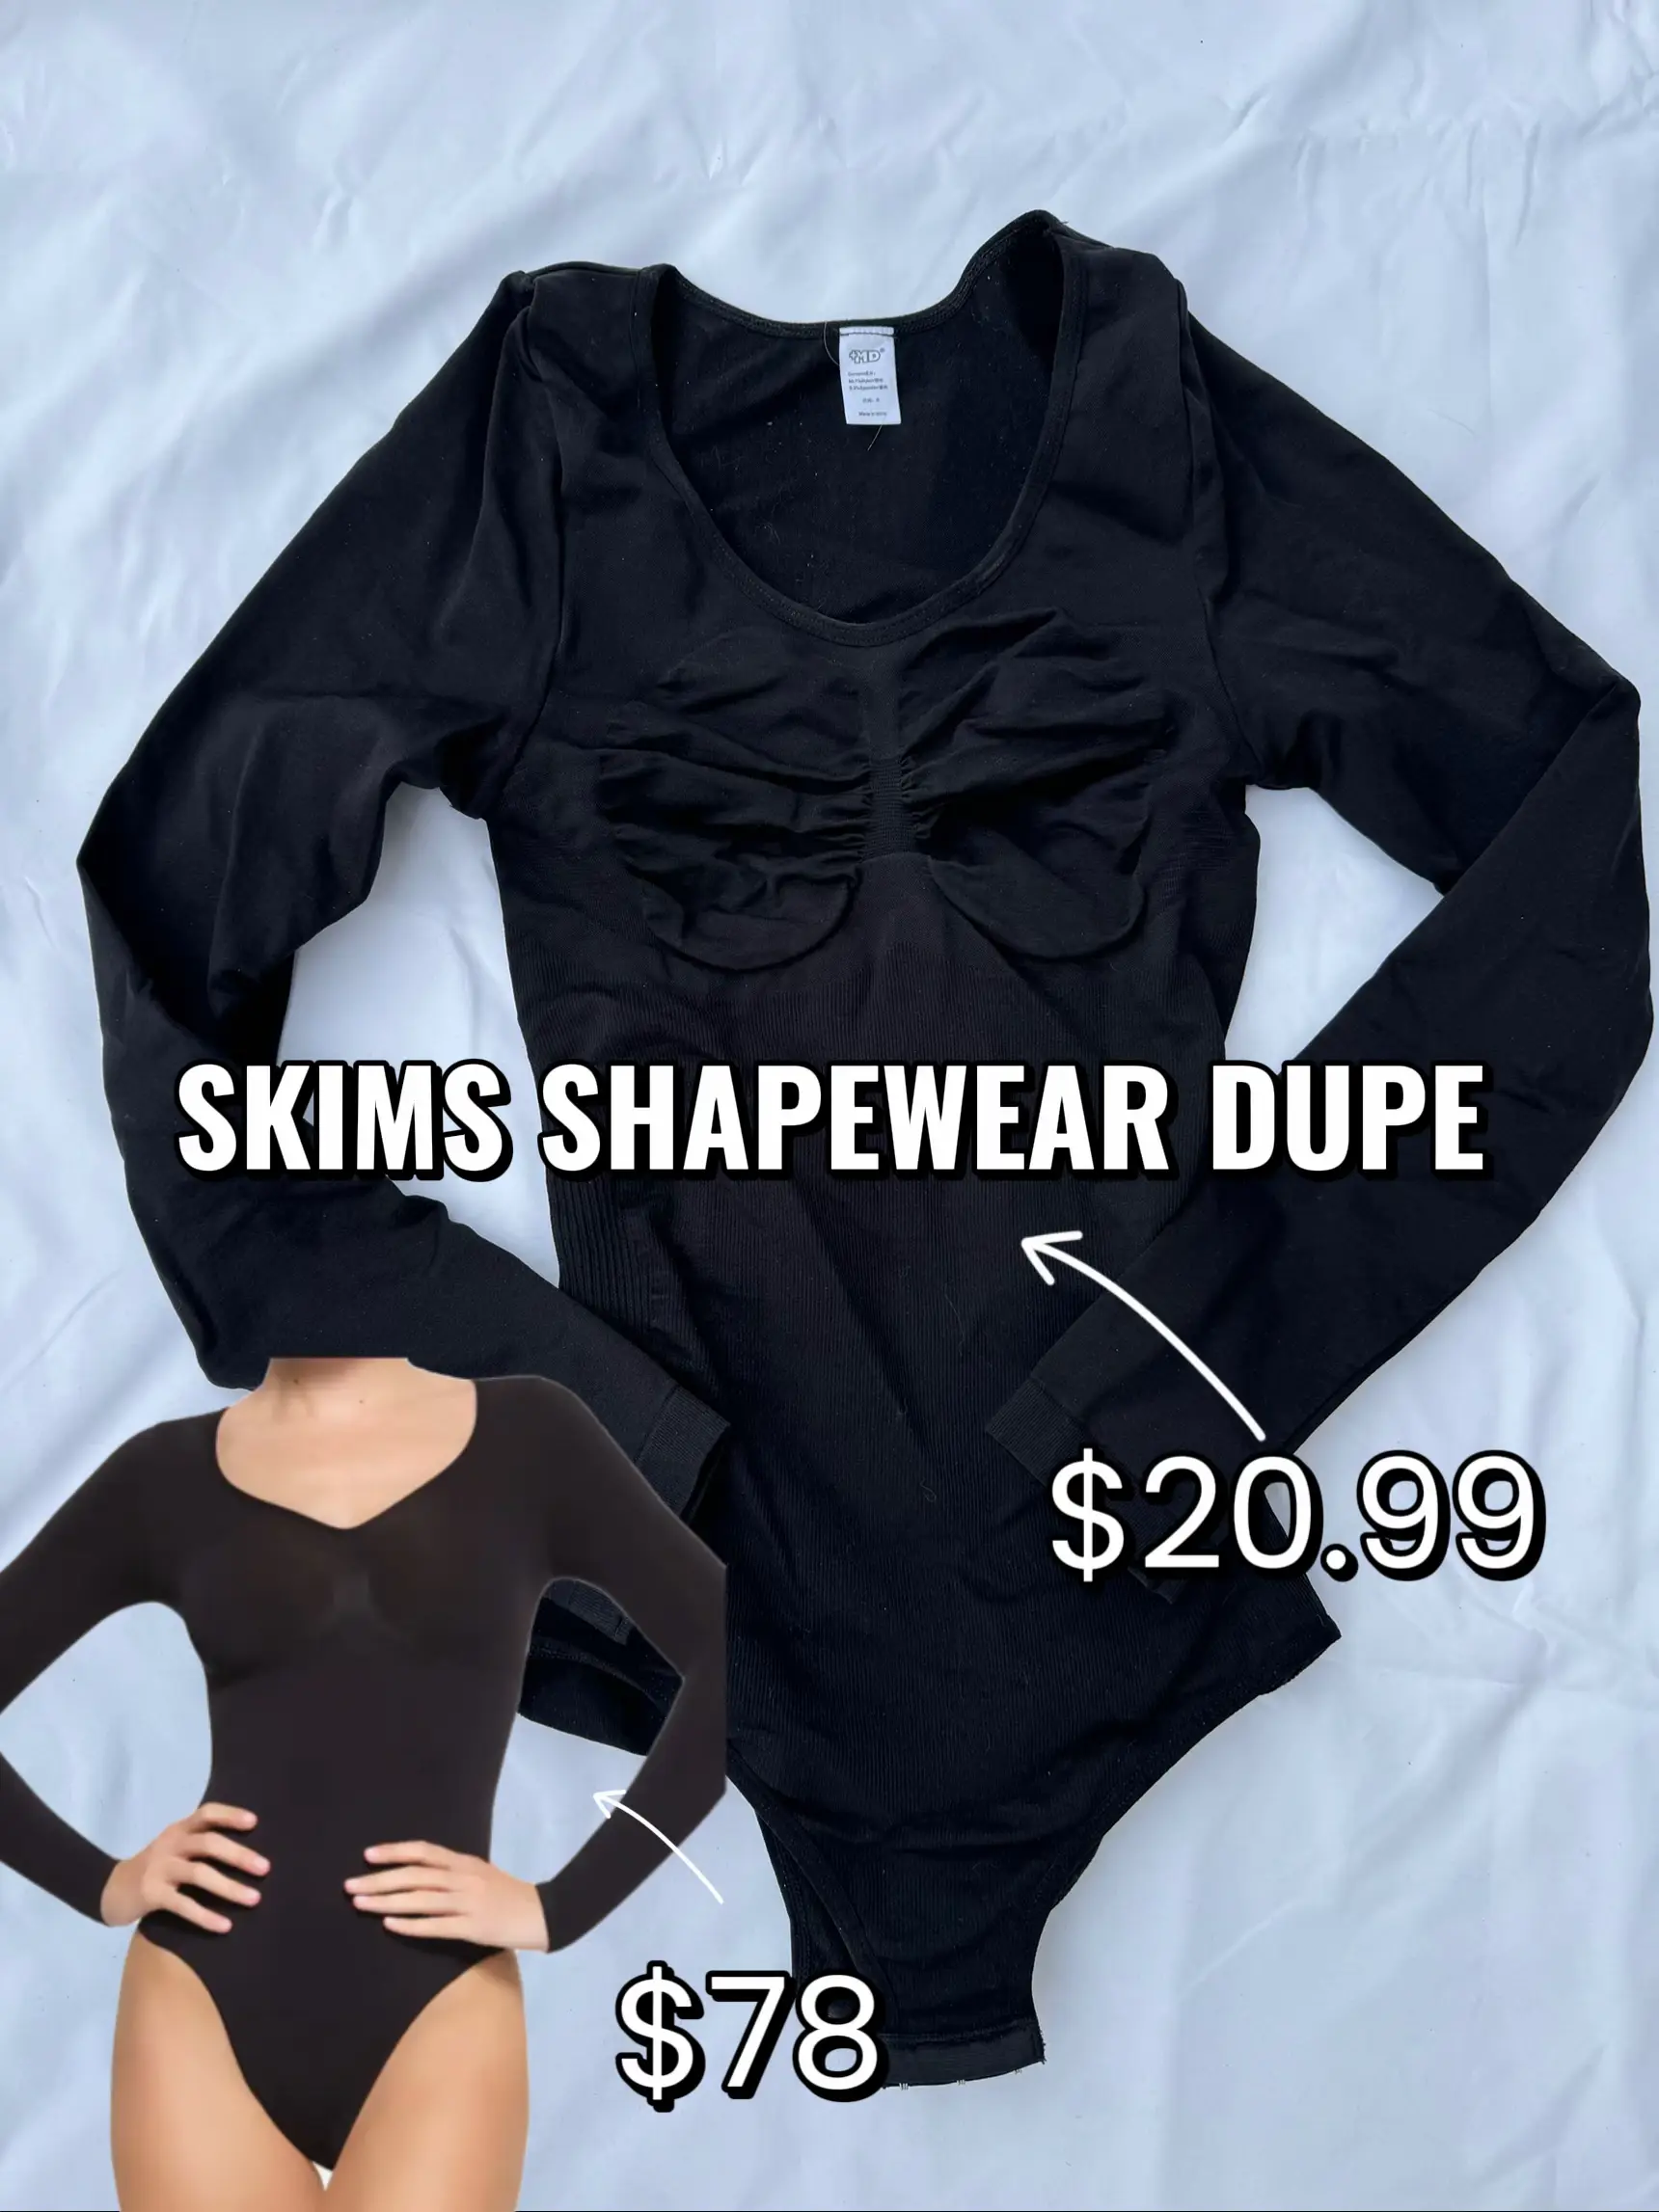 PloppyDolly bodysuit shapewear is better than the $68 SKIMS